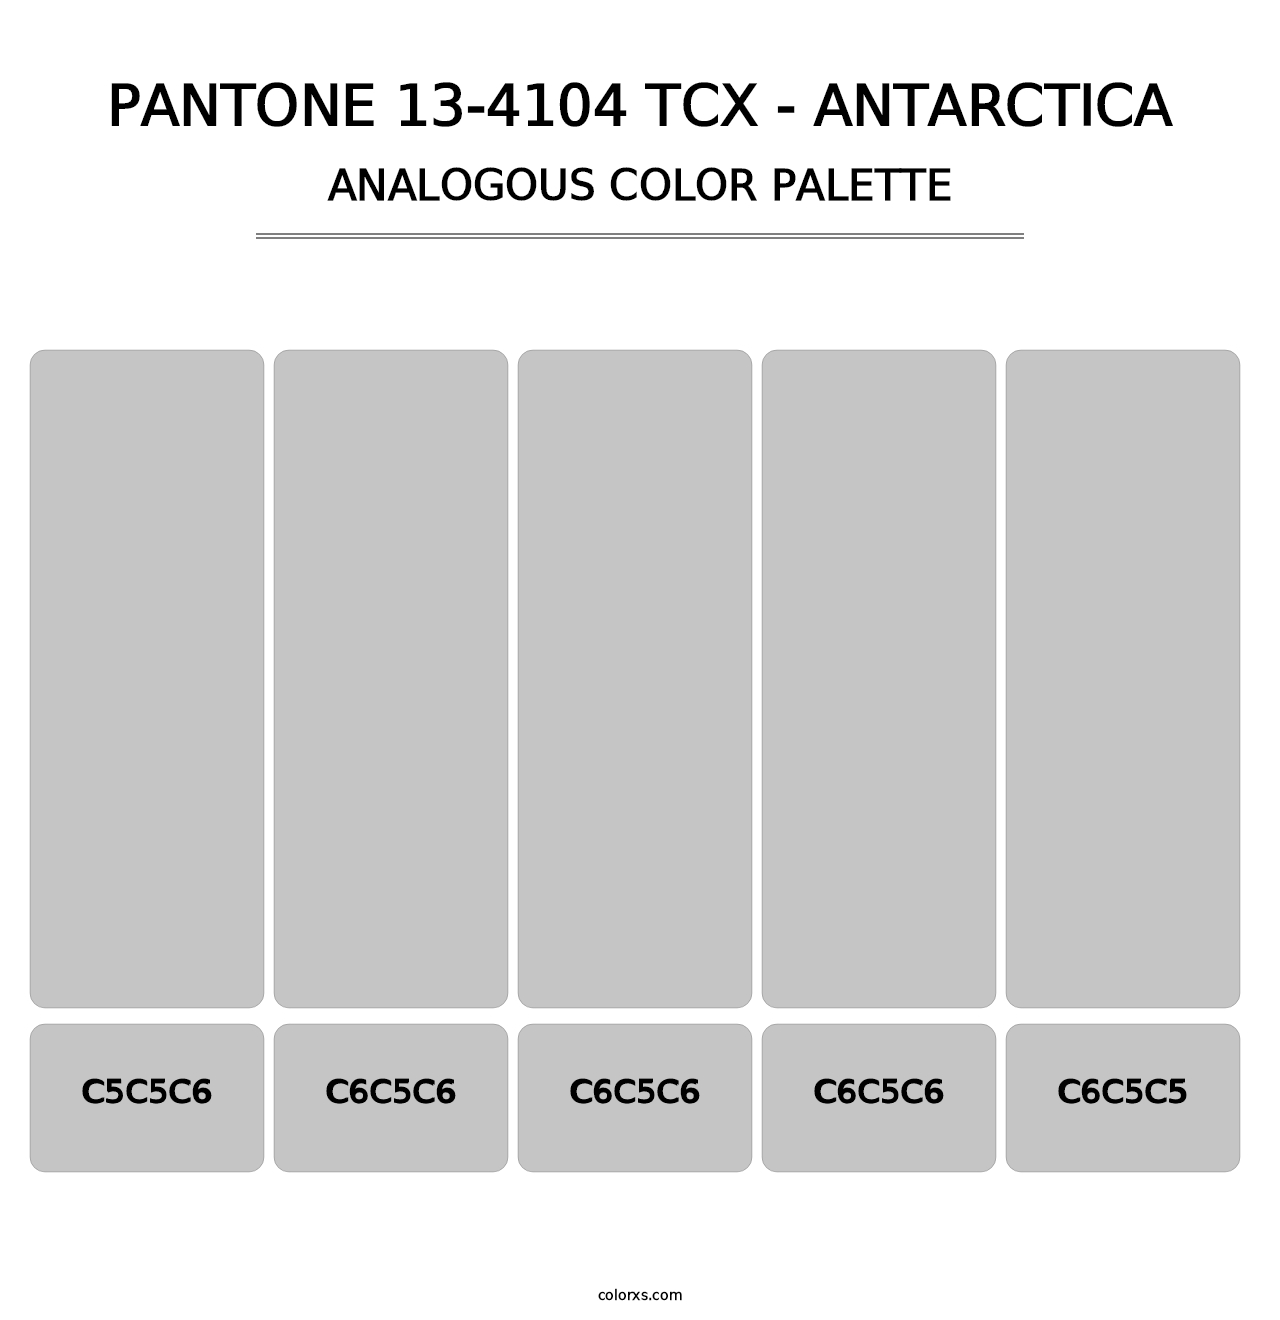 PANTONE 13-4104 TCX - Antarctica - Analogous Color Palette